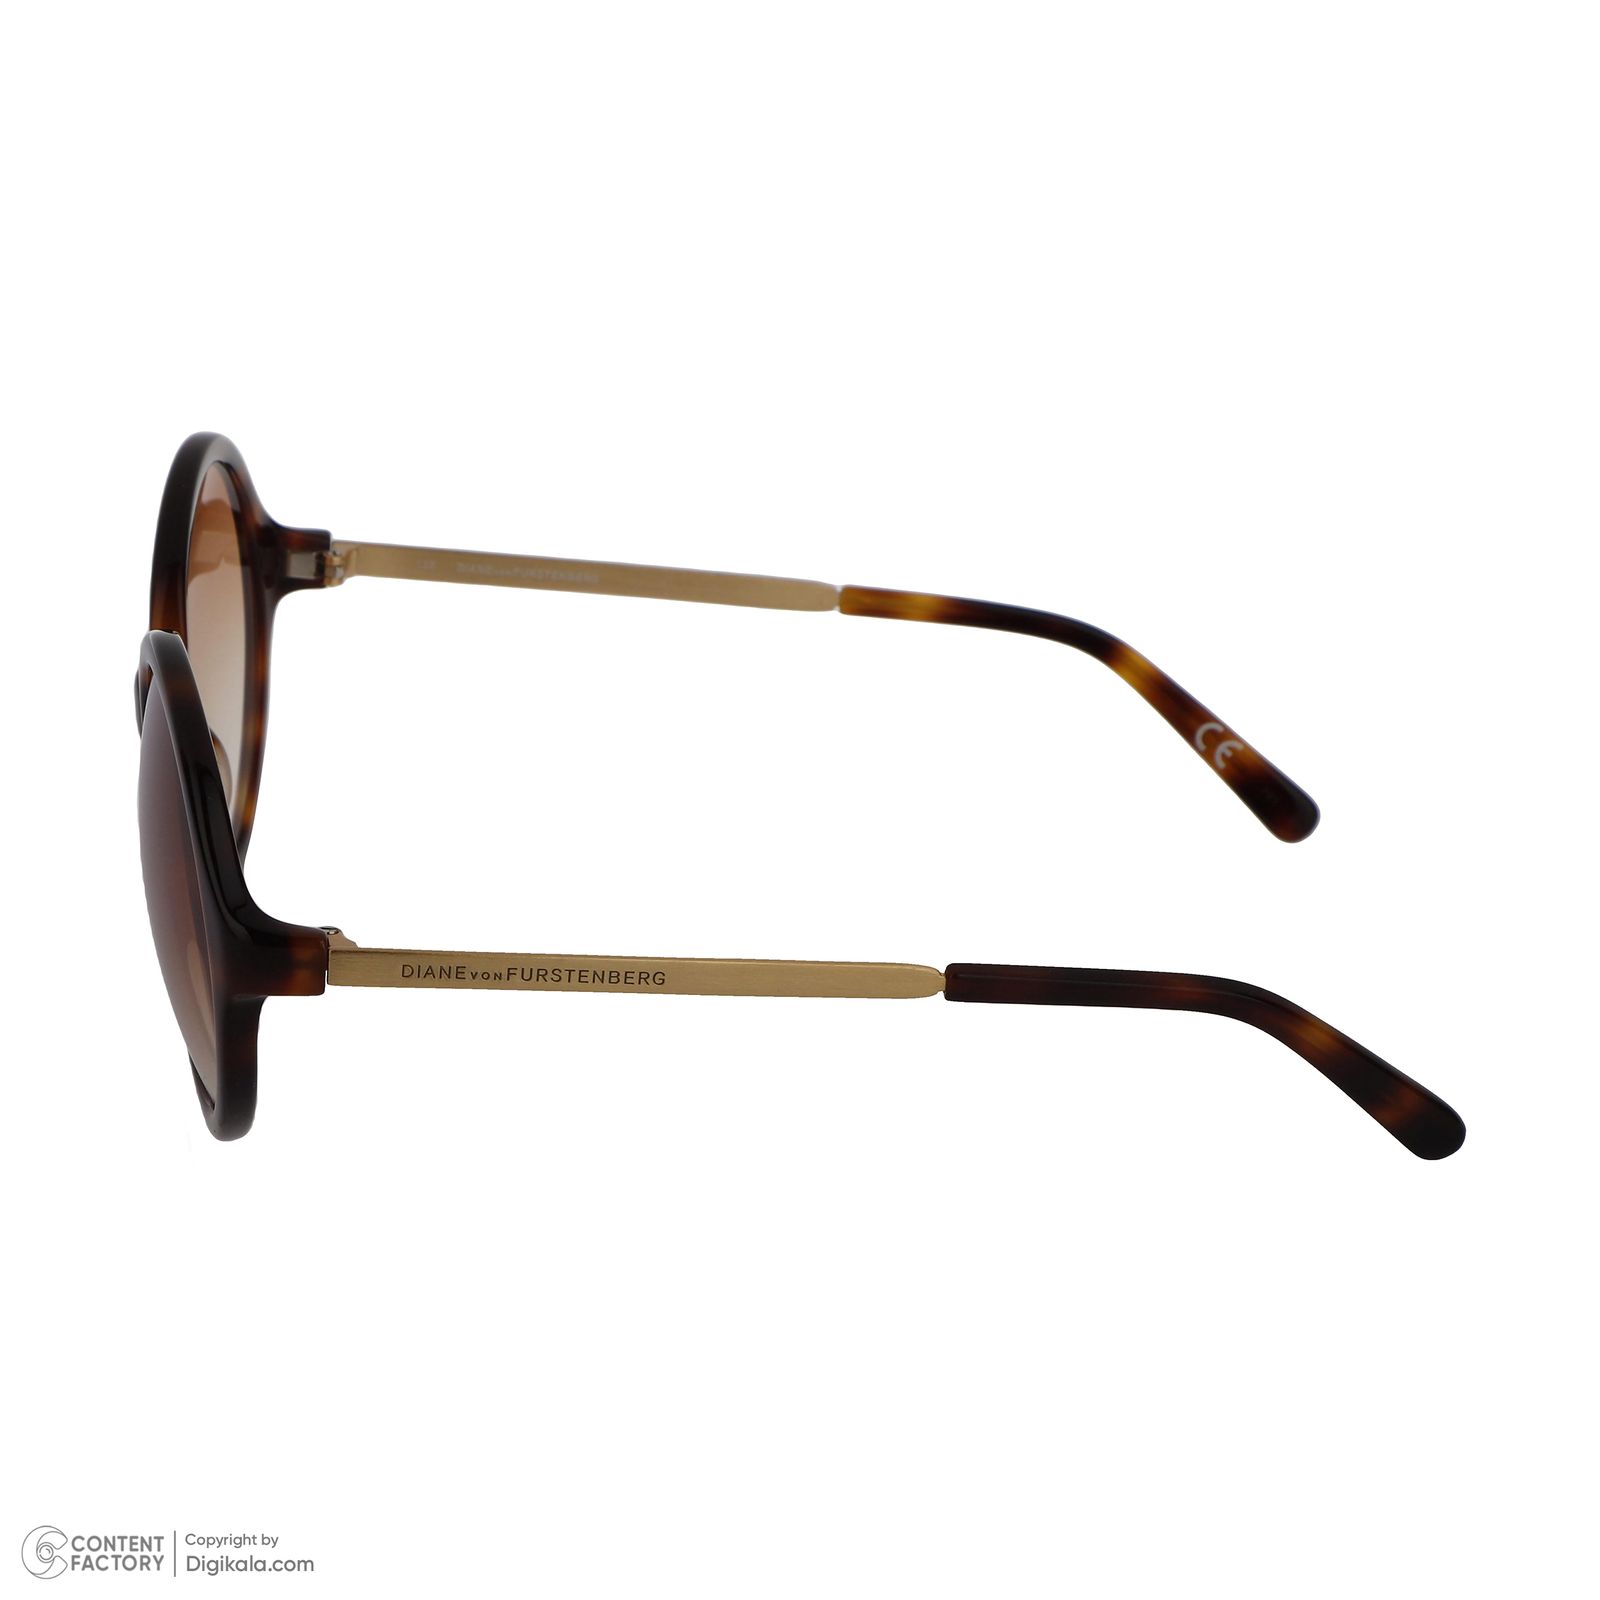 عینک آفتابی زنانه دایان وان فارستنبرگ مدل DVF000640S024054 -  - 5